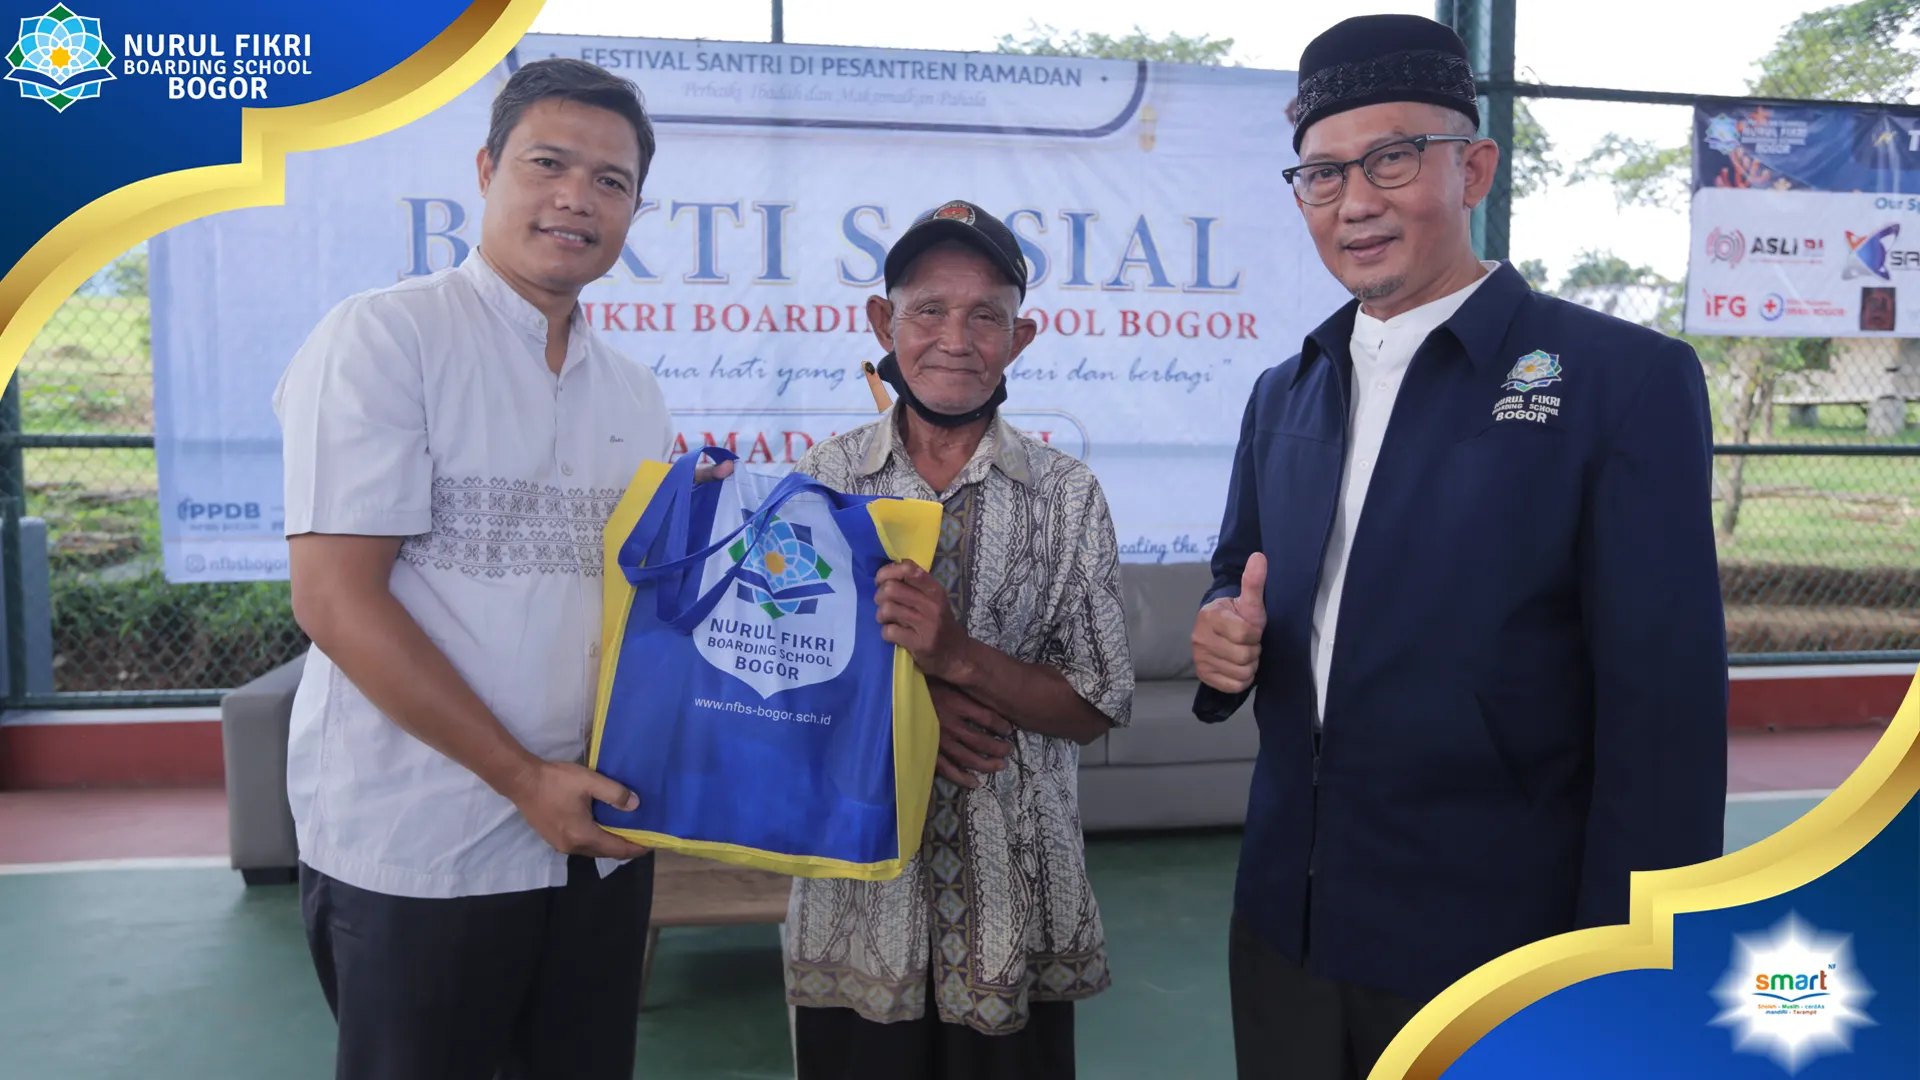 Berbagi Keberkahan di Bulan Ramadhan  Nurul Fikri Boarding School (NFBS) Bogor bagikan 1.000 paket sembako kepada Masyarakat